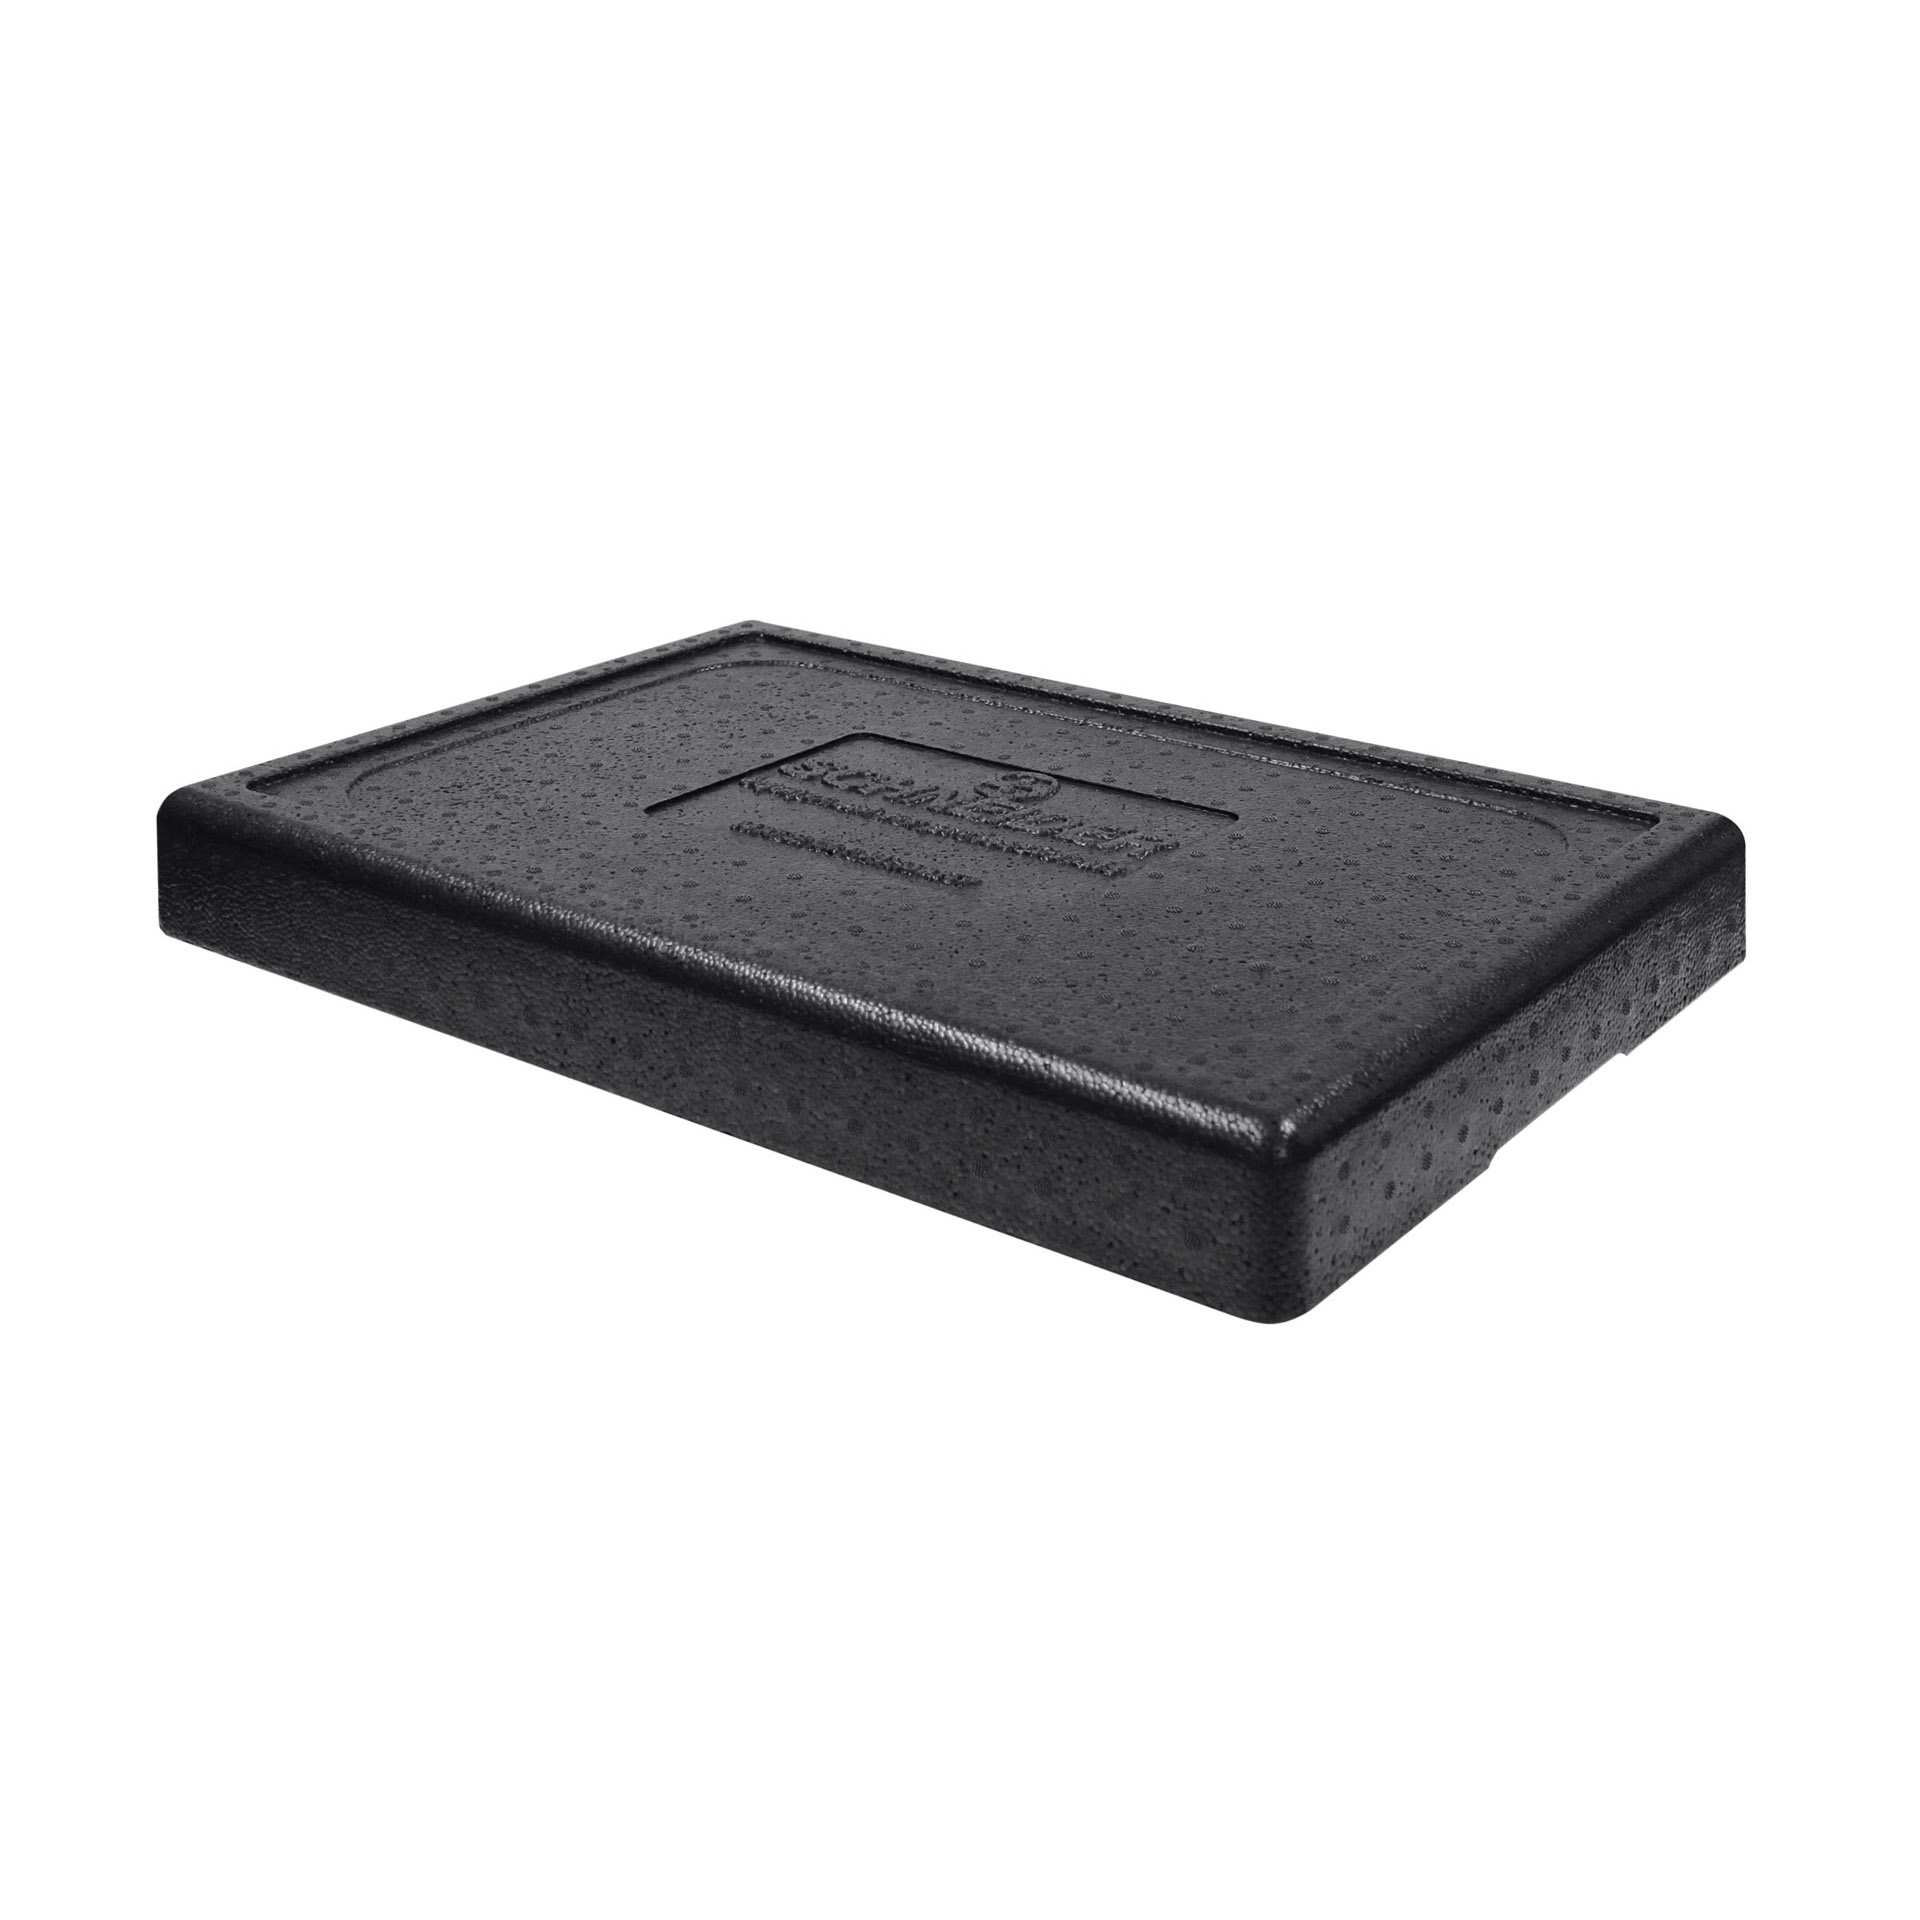 TOP-BOX - Ersatzdeckel - Abm. 60,0 x 40,0 x 3,5 cm - GN 1/1 (530 x 325 mm) - EPP - 620990-C